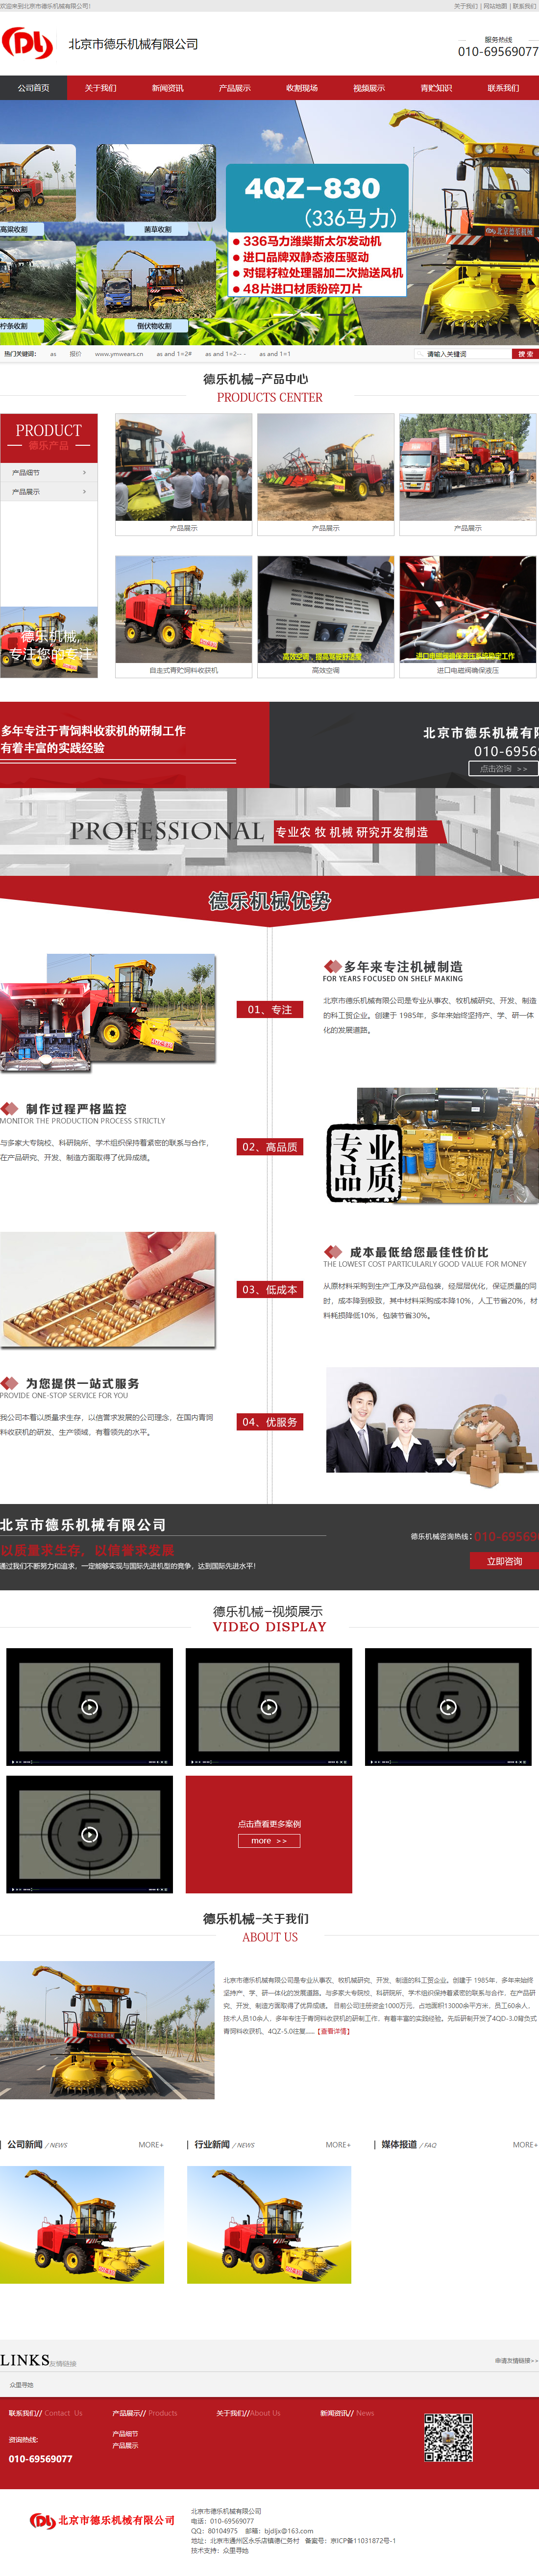 北京市德乐机械有限公司网站案例